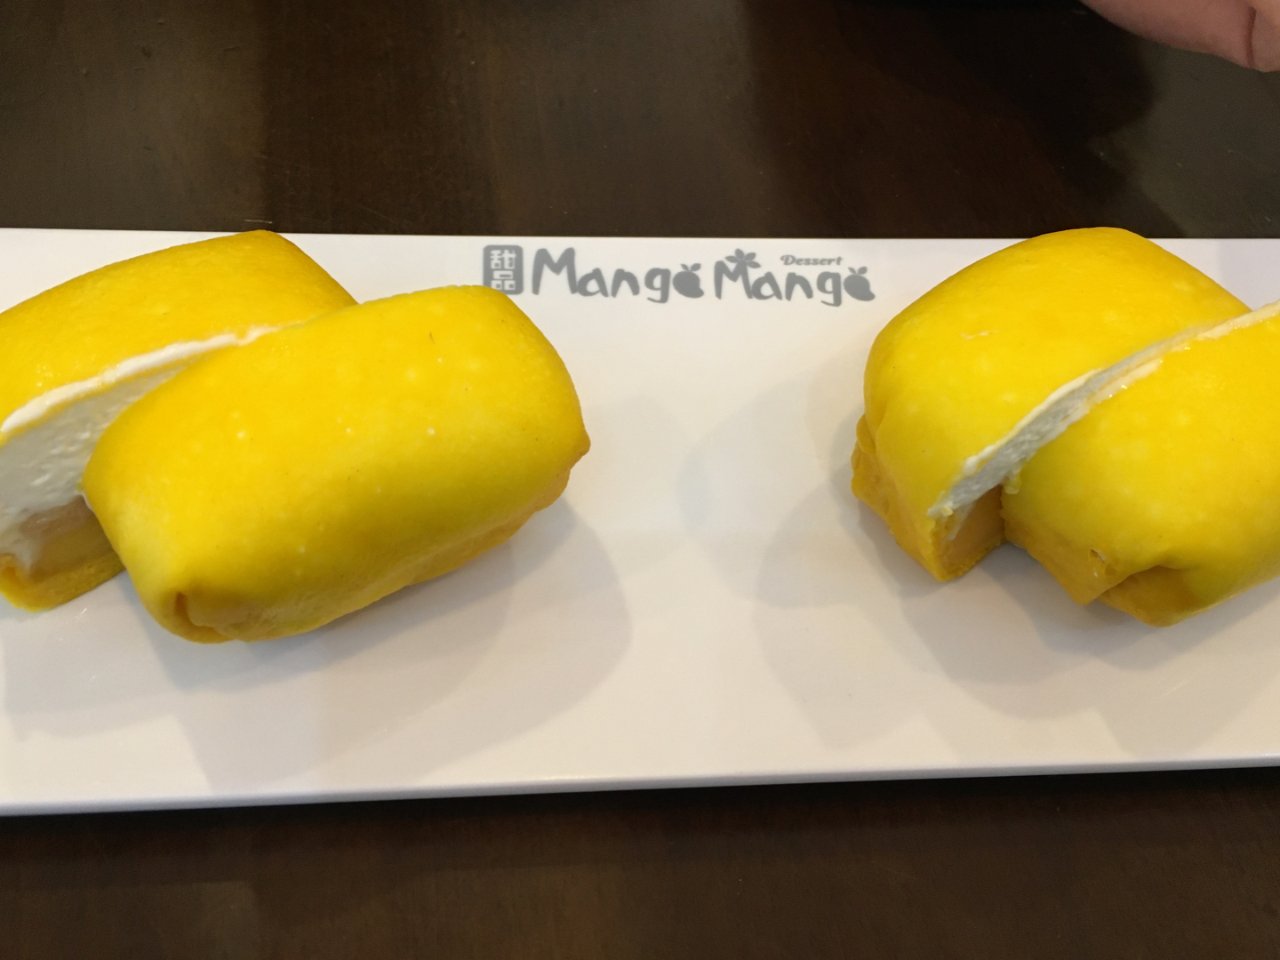 Mango mango